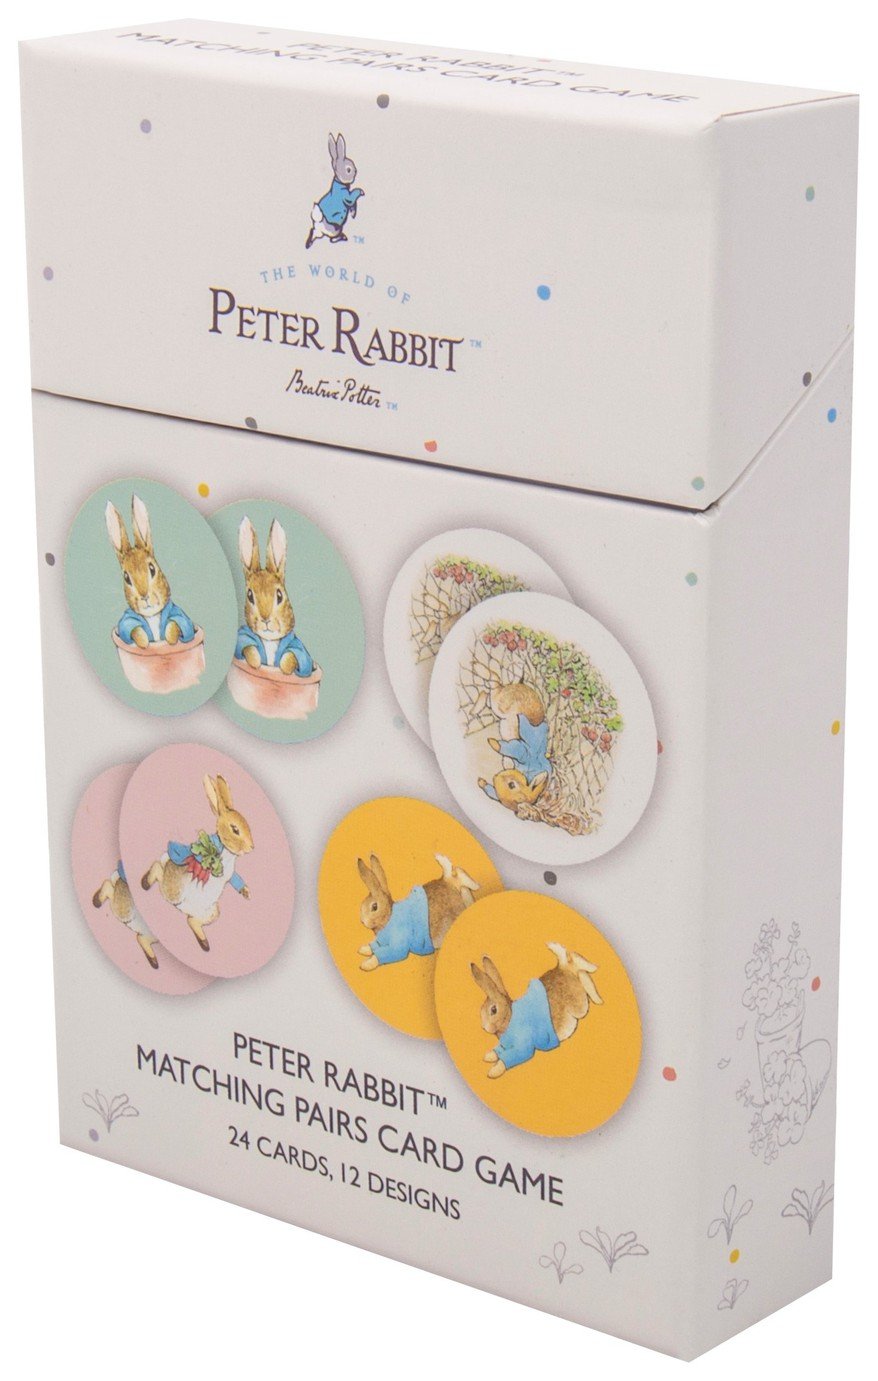 Peter Rabbit Matching Pairs Card Game